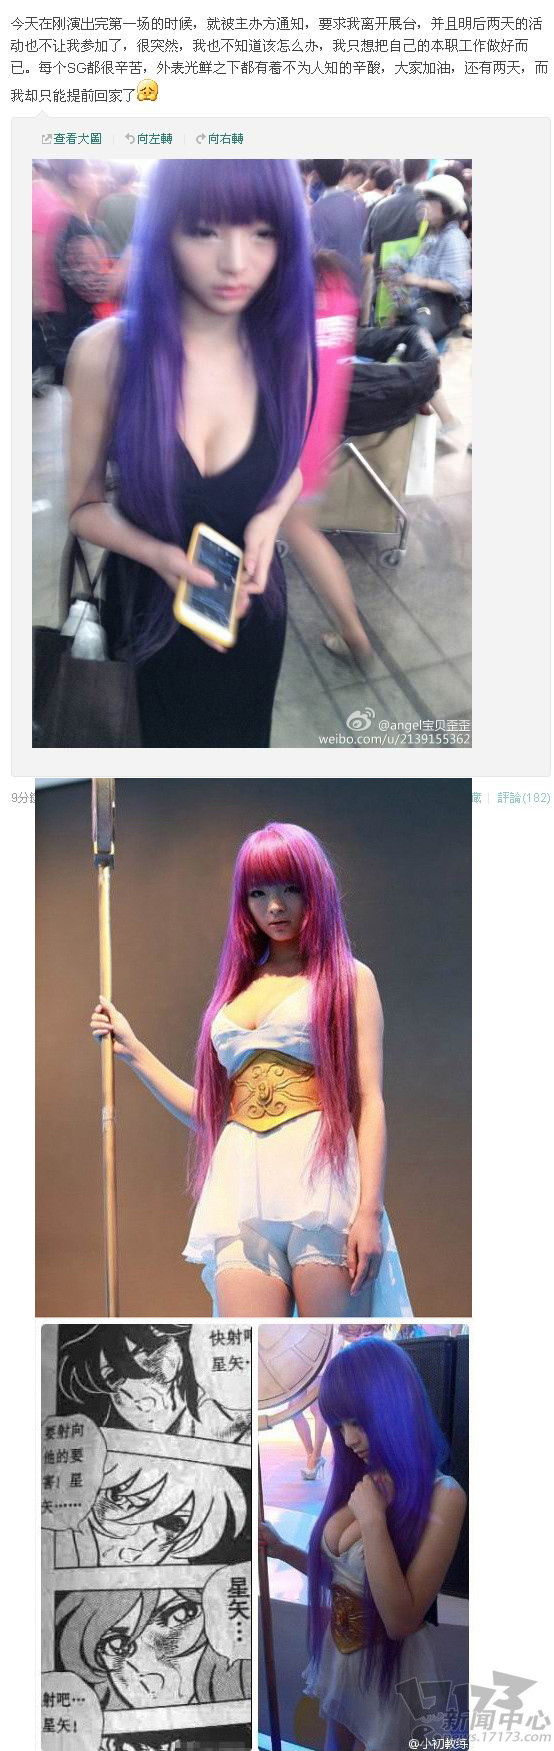 Showgirl Lí Linh bị ban tổ chức cấm vào vì bộ trang phục vi phạm quy định